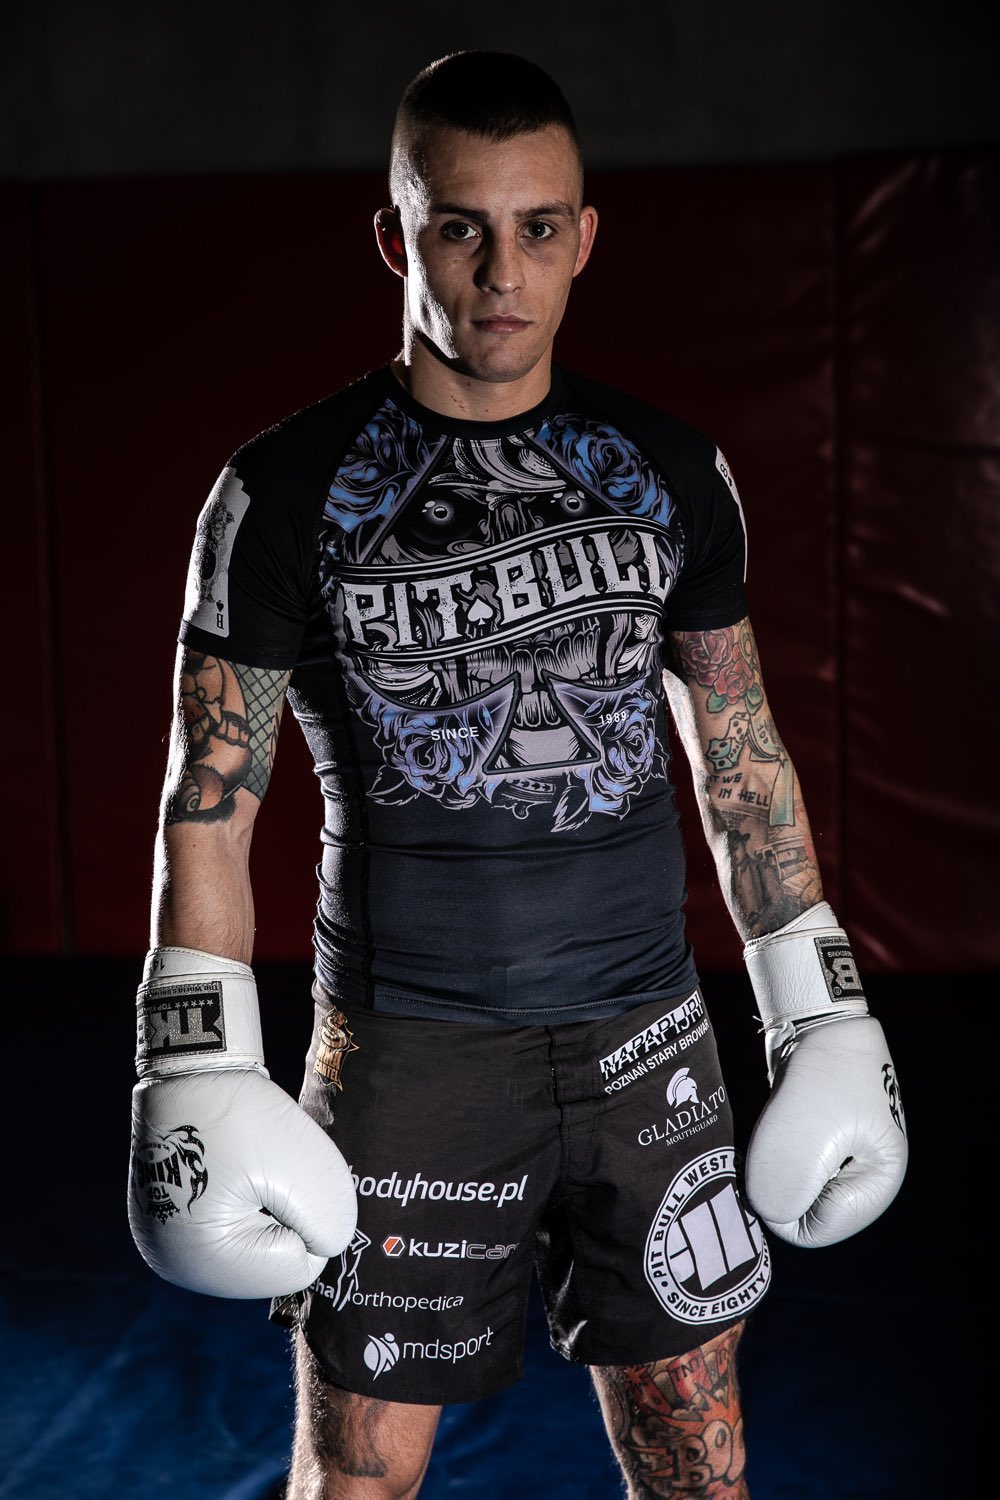 Filip “Wolan” Wolański – tatuaże zawodnika MMA